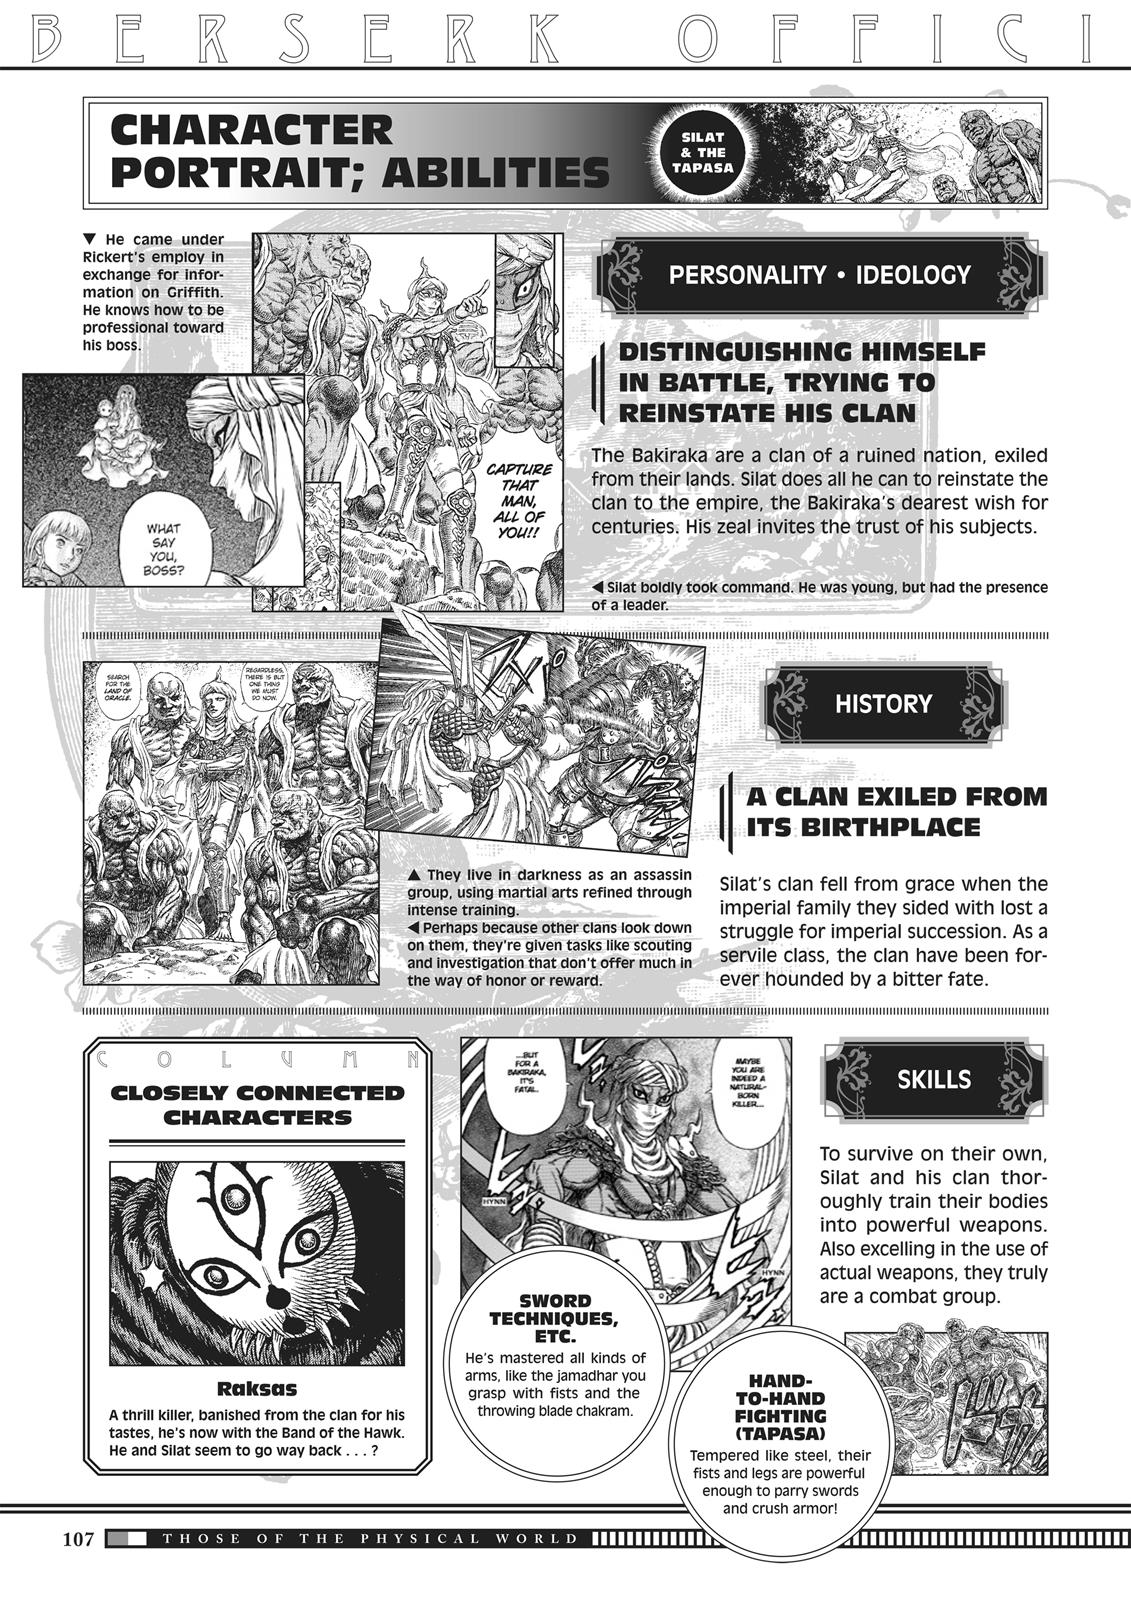 Berserk Manga Chapter 350.5 image 105